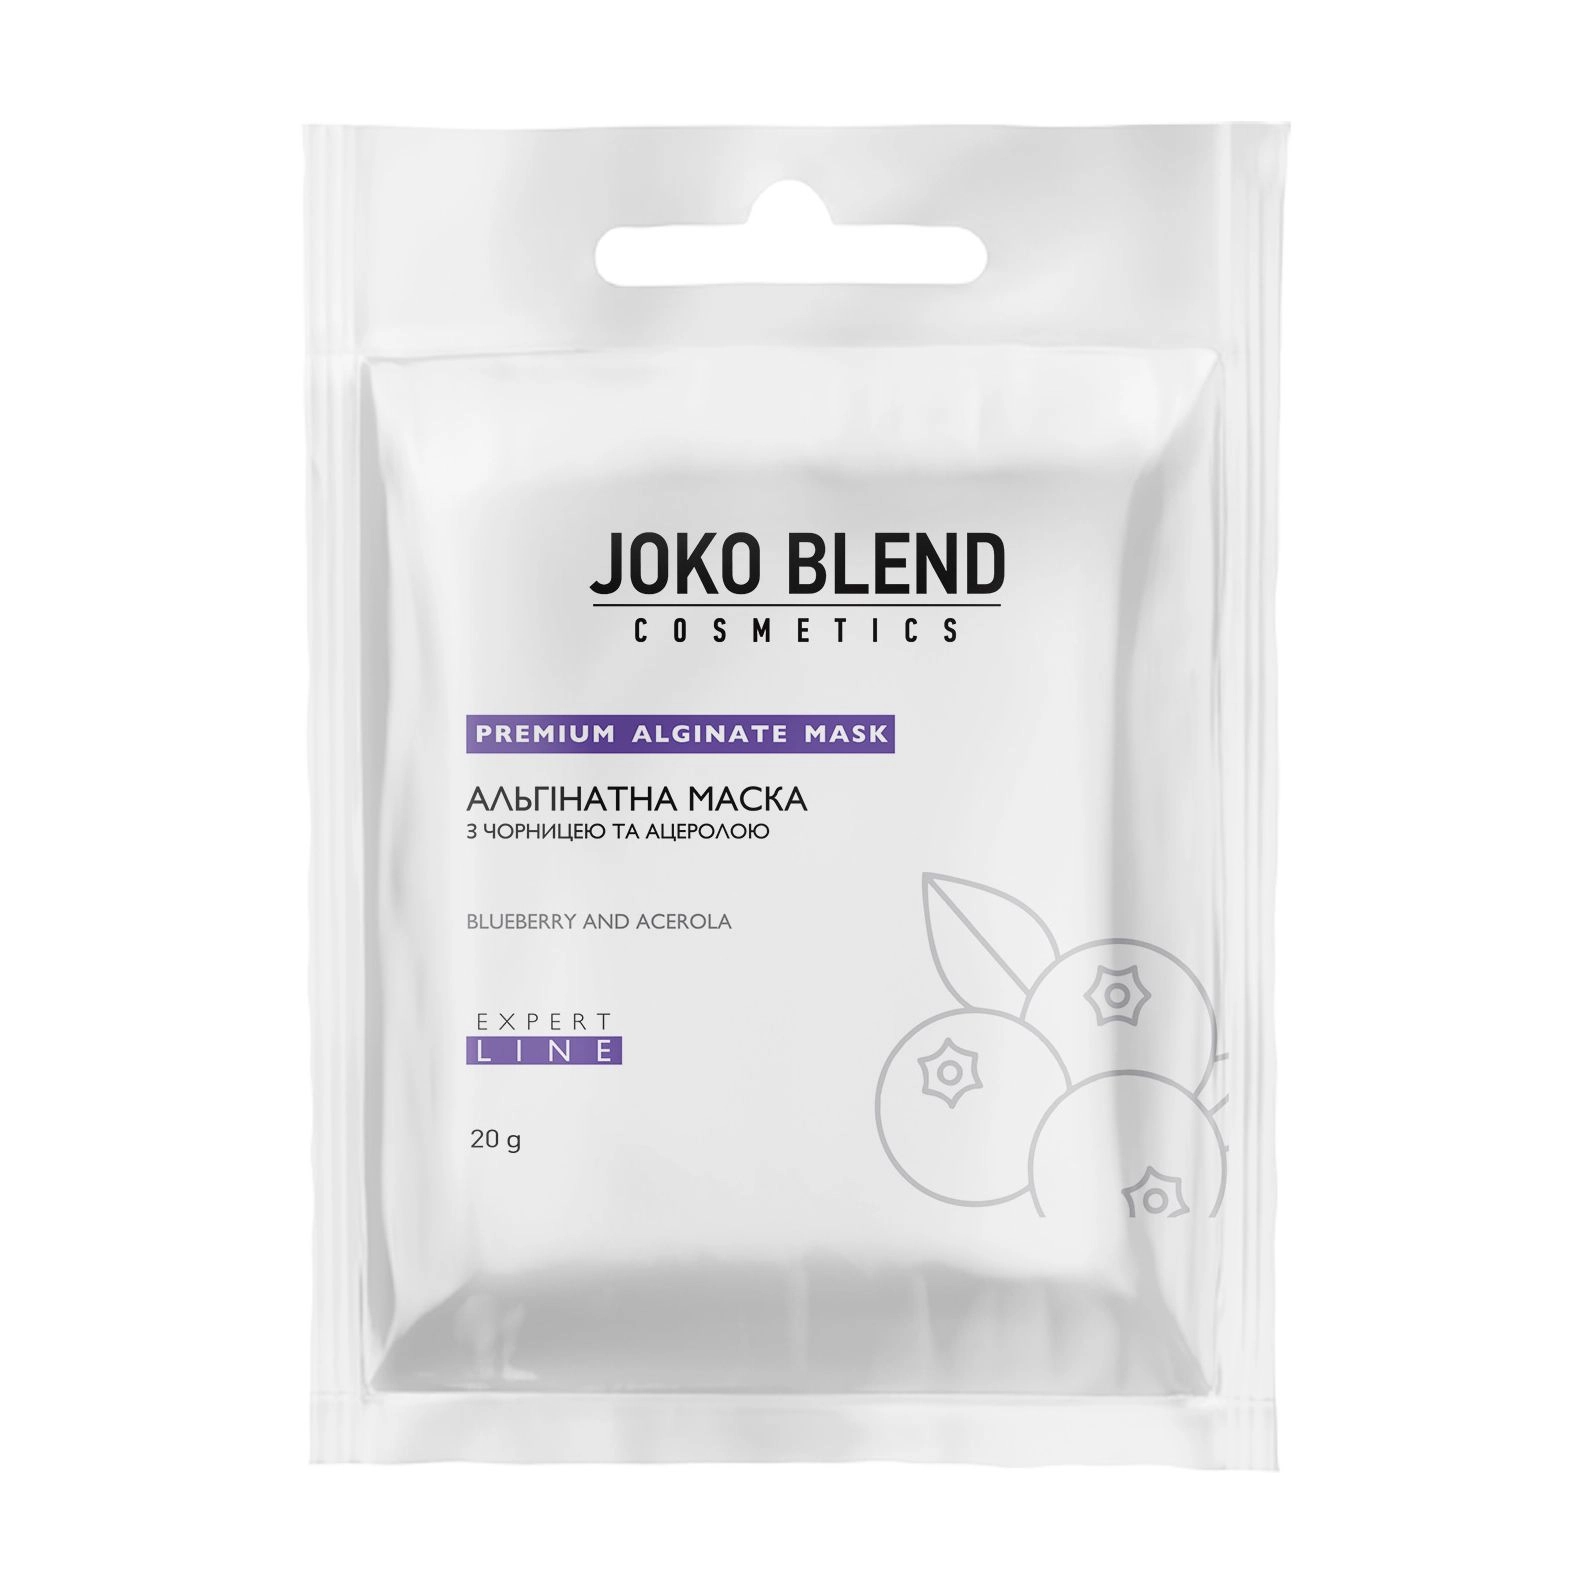 Антивозрастная альгинатная маска с черникой и ацеролой - Joko Blend Premium Alginate Mask, 20 г - фото N4